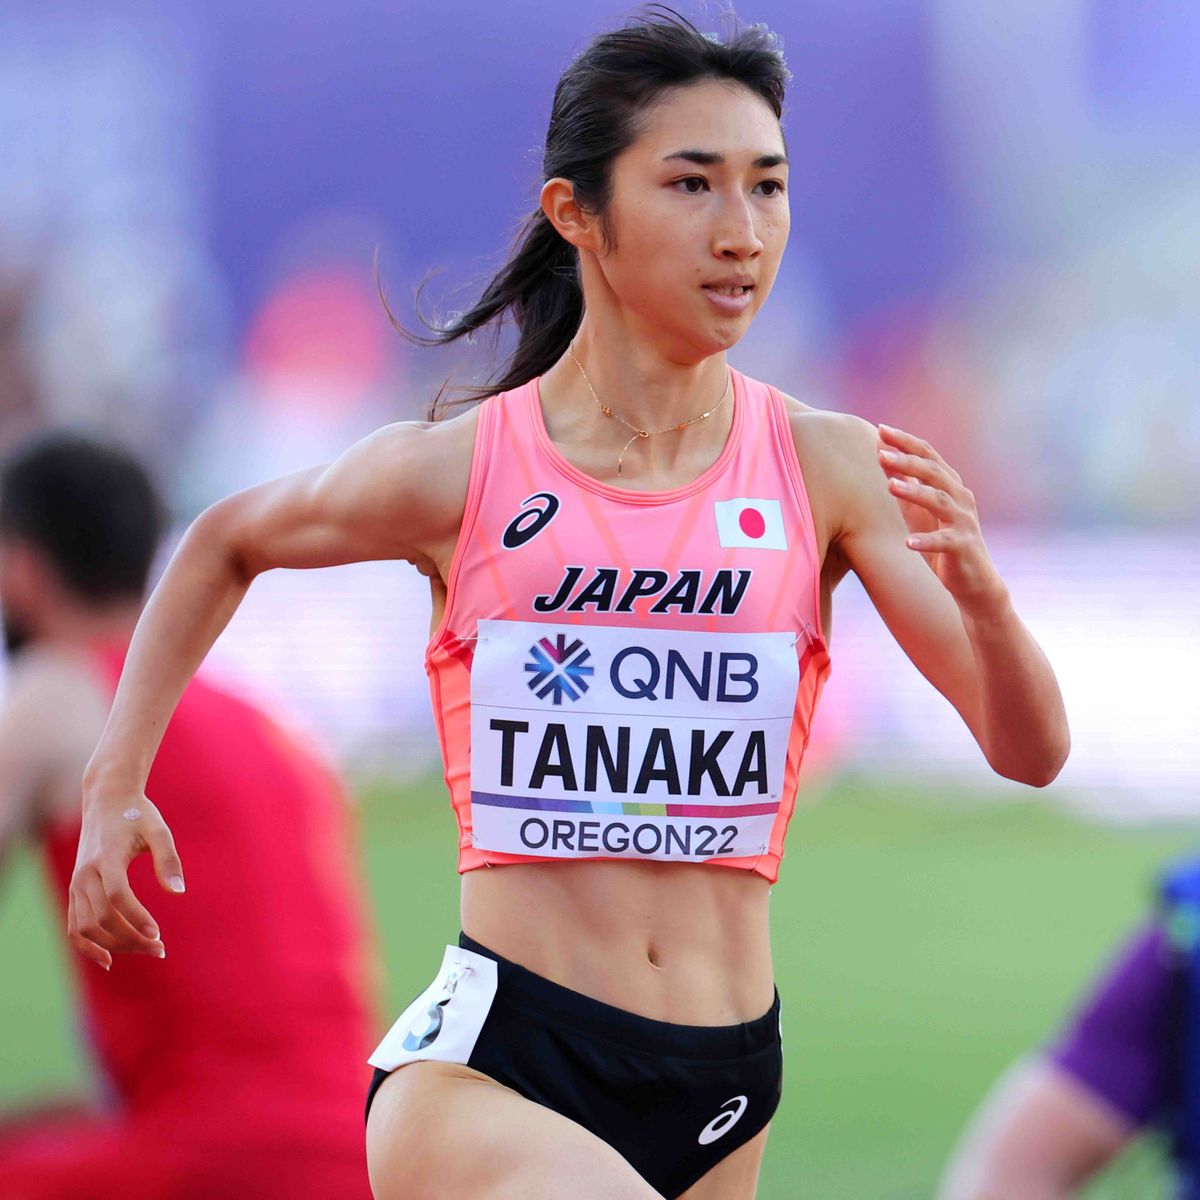 【陸上世界選手権】女子5000mで田中希実が決勝進出「気持ちを折らずに食らいつくことができた」